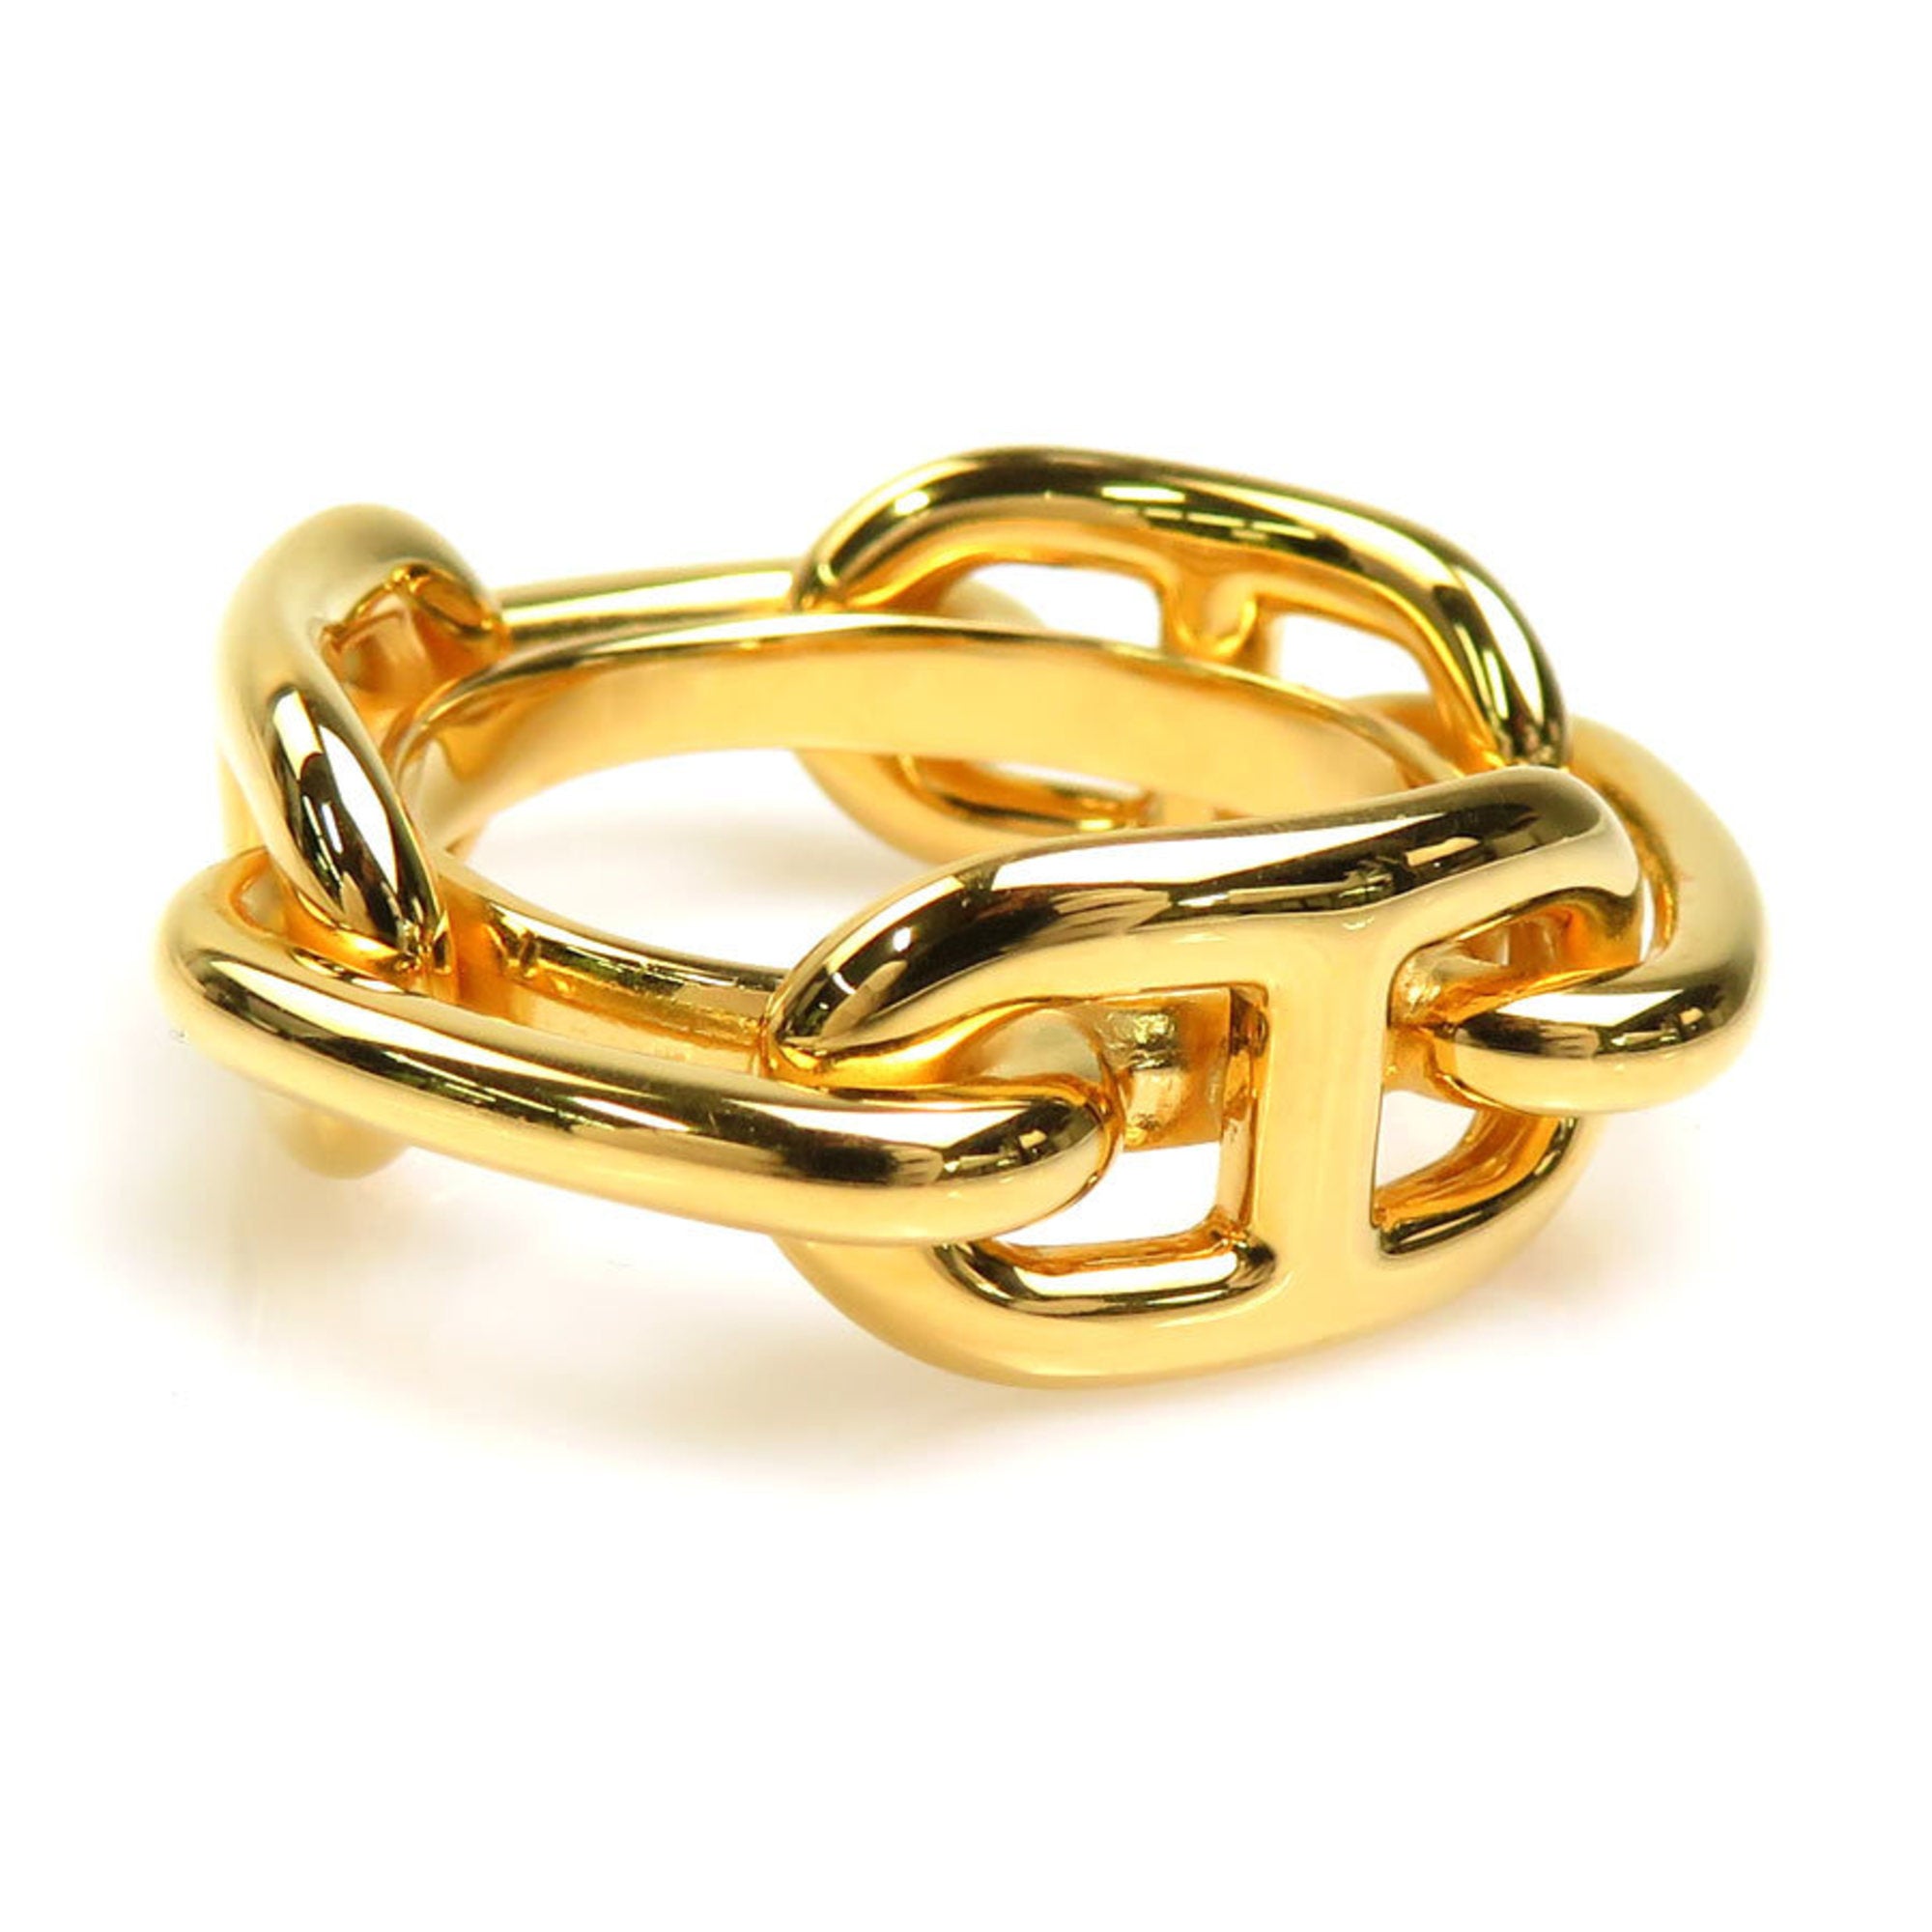 HERMES scarf ring shanedankuru metal gold unisex